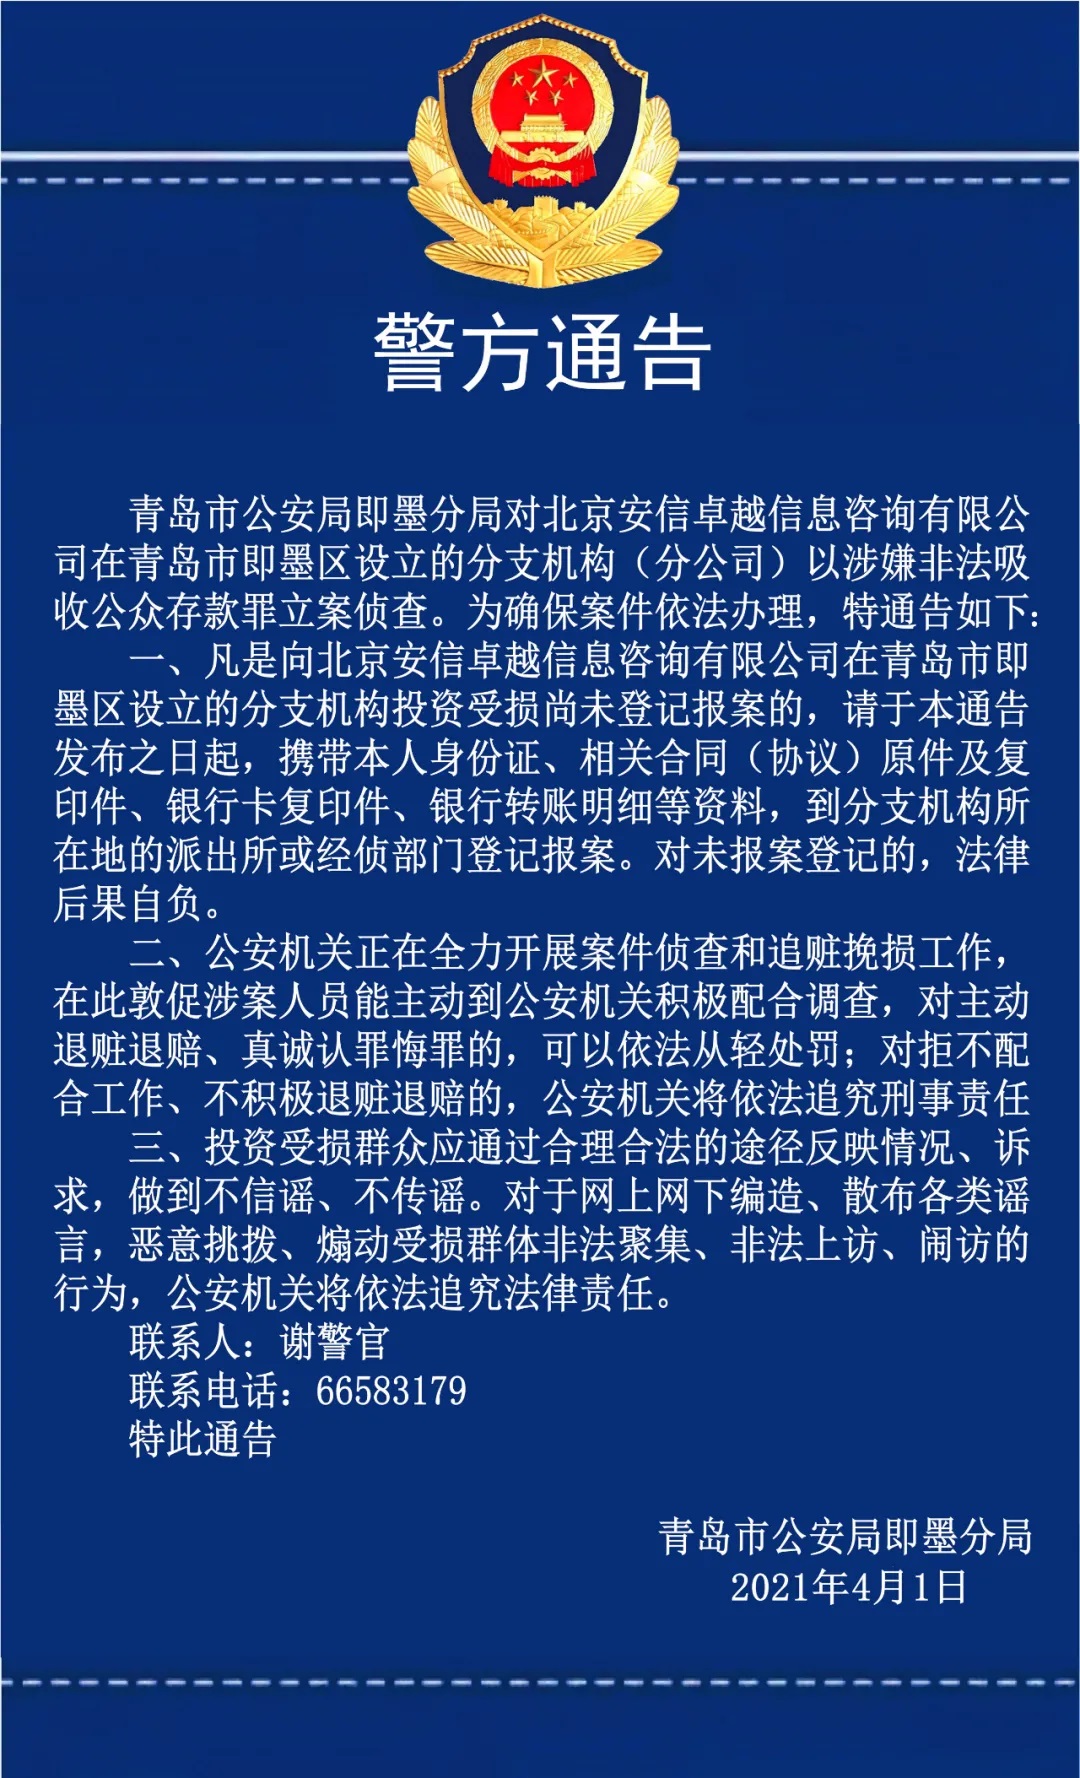 北京安信卓越涉嫌非法吸收公众存款 青岛警方全力开展破案和追赃工作